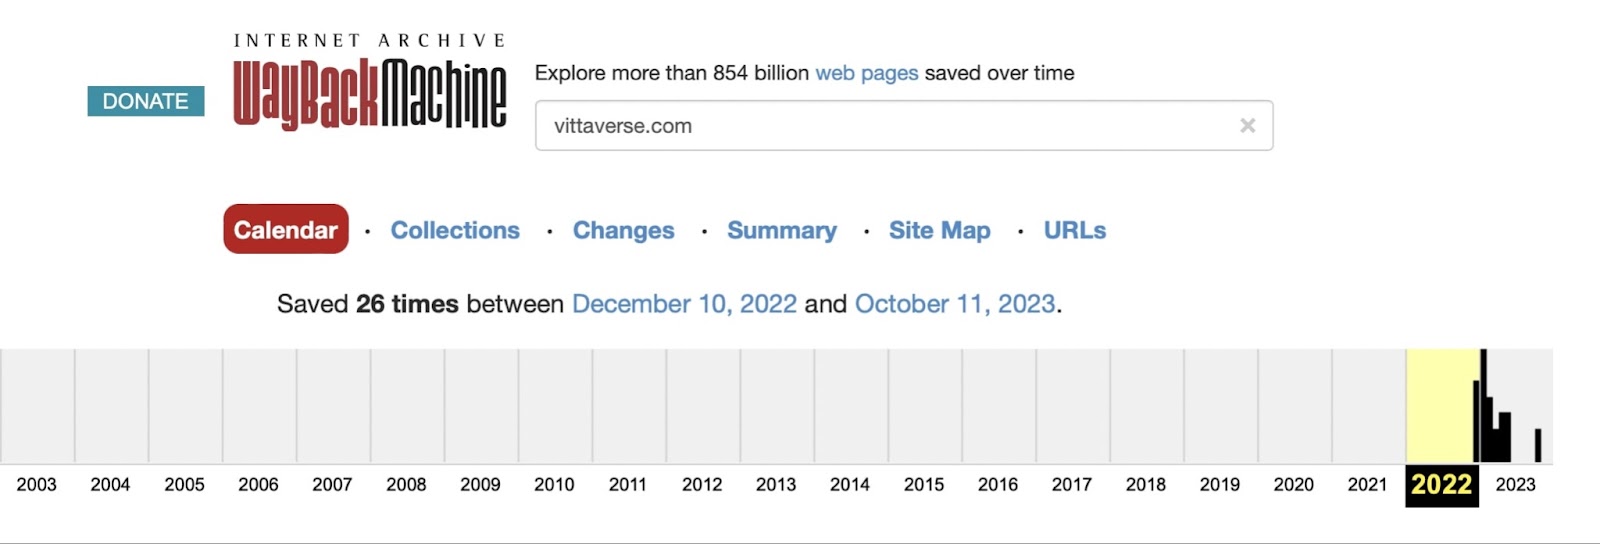 Vittaverse: отзывы клиентов о работе компании в 2023 году